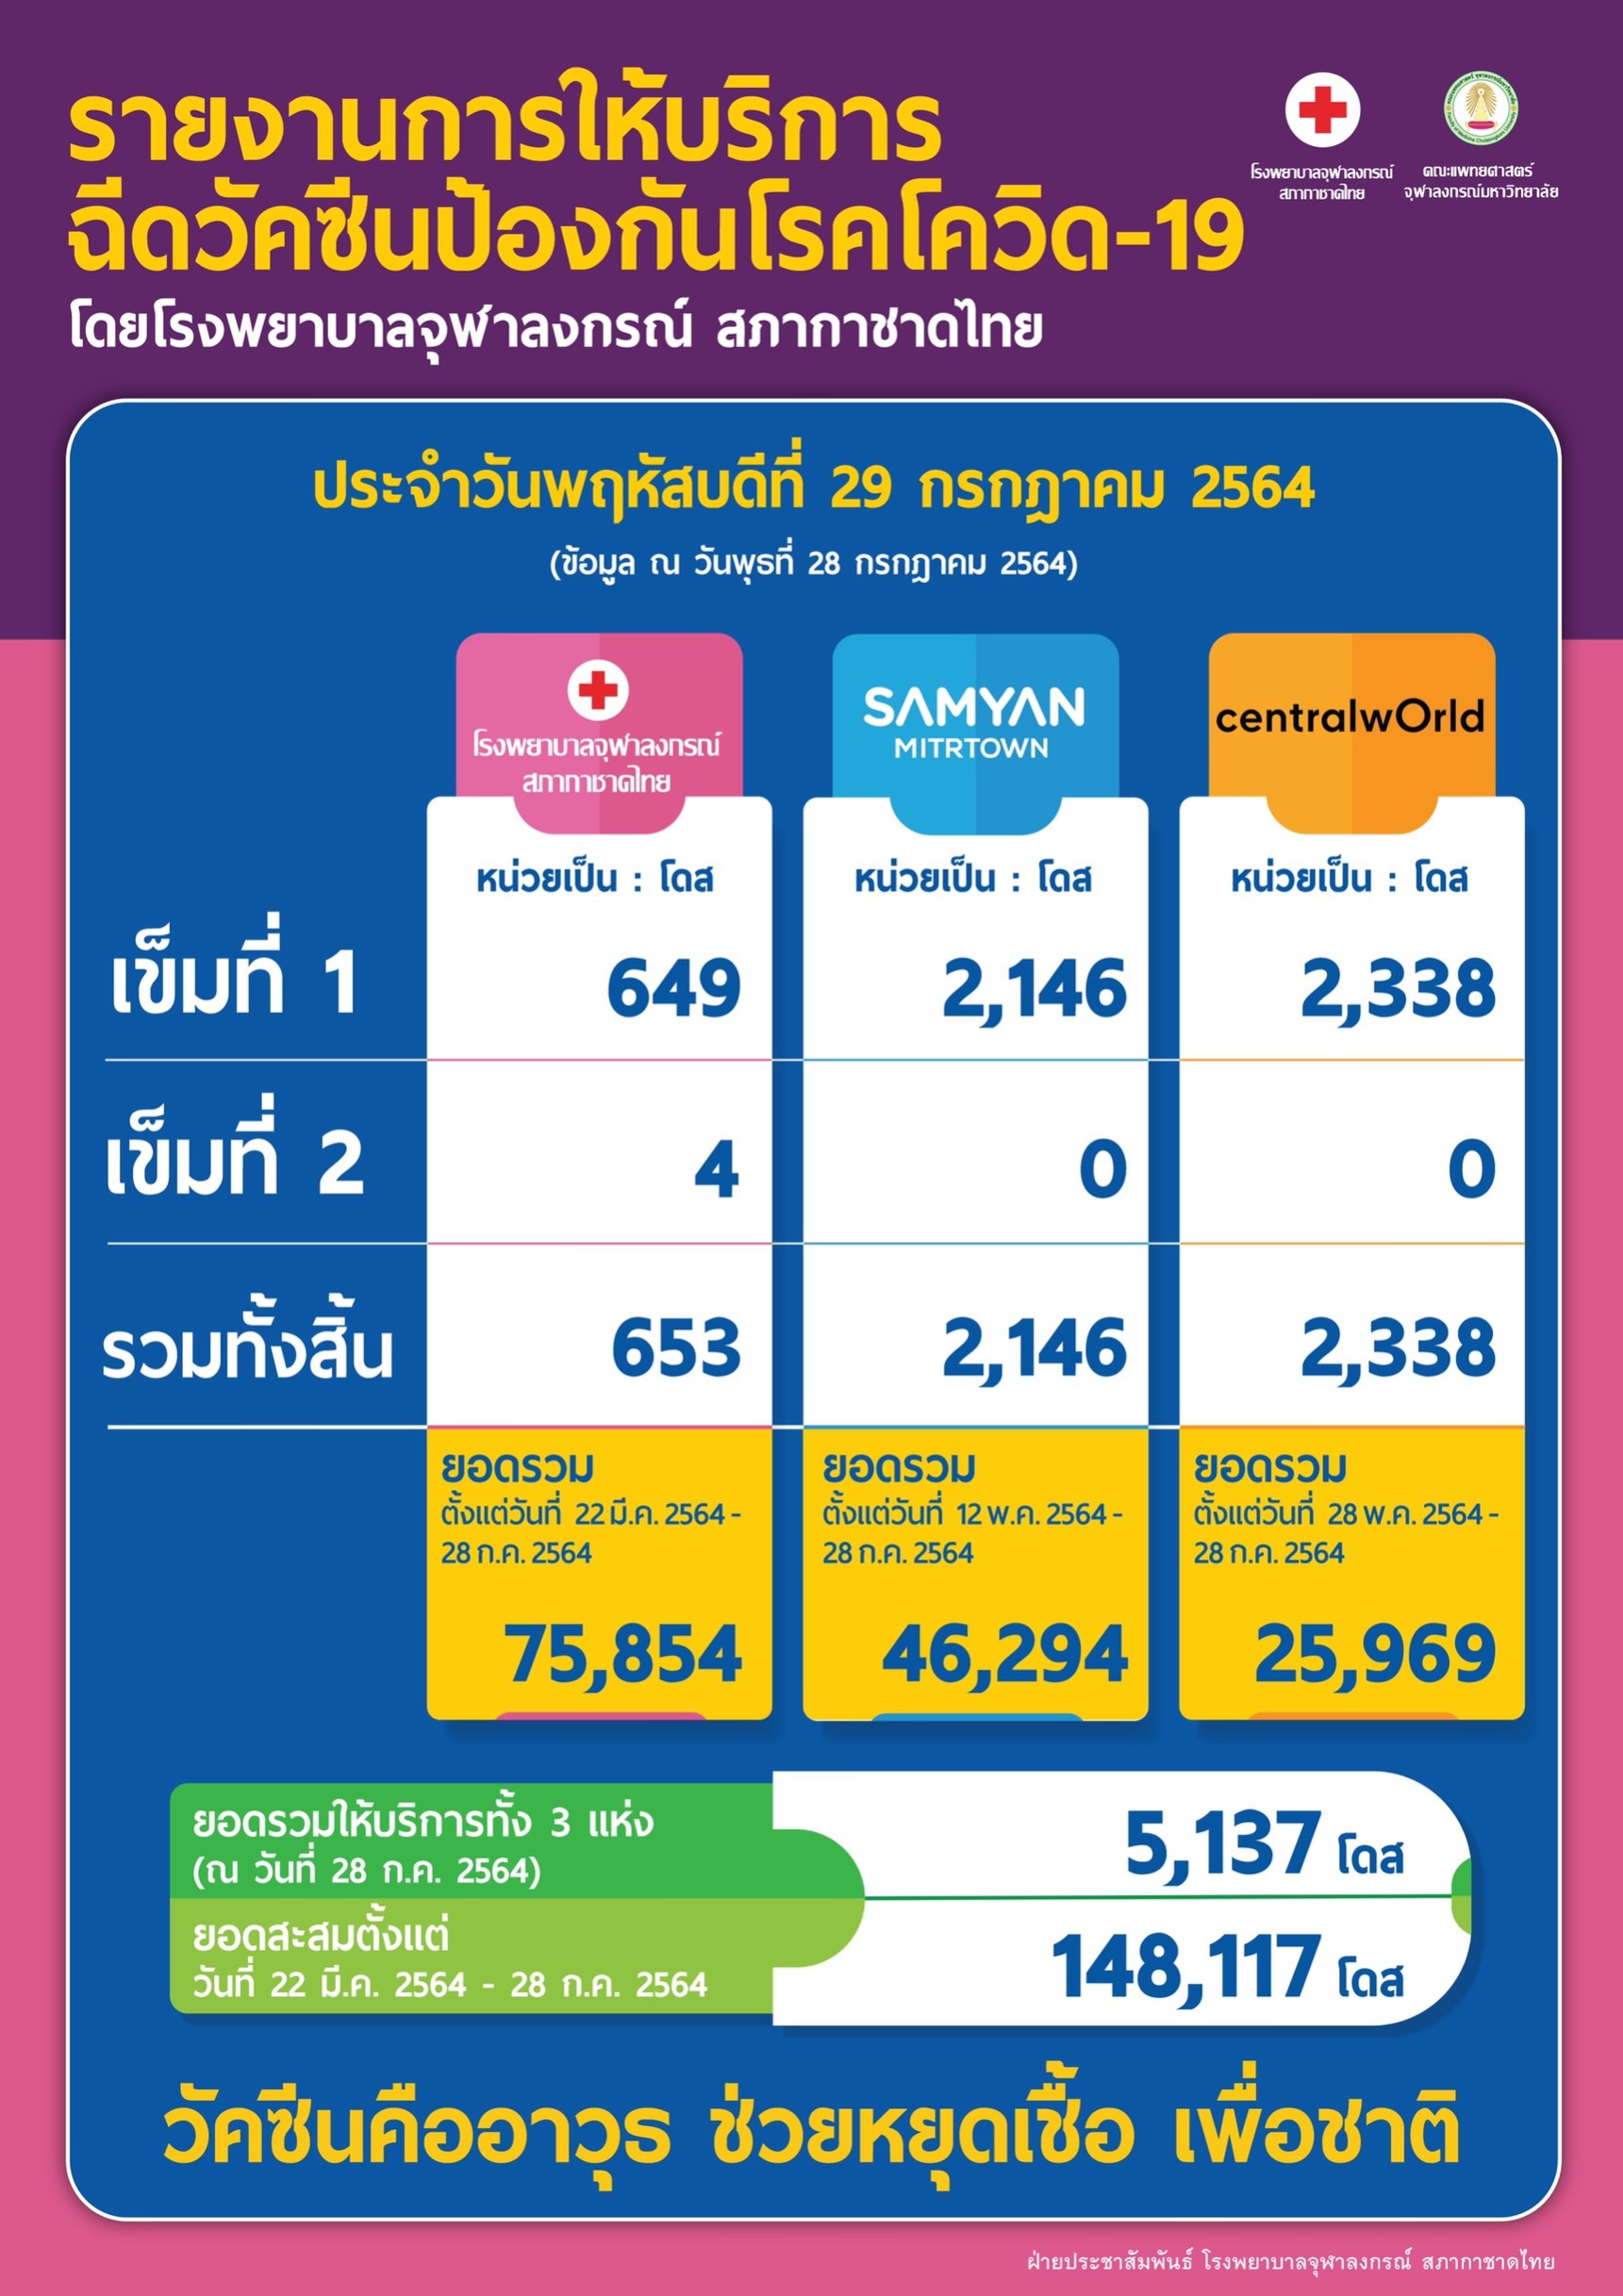 รายงานการให้บริการฉีดวัคซีนป้องกันโรคโควิด-19 โดยโรงพยาบาลจุฬาลงกรณ์ สภากาชาดไทย ประจำวันพฤหัสบดีที่ 29 กรกฎาคม 2564